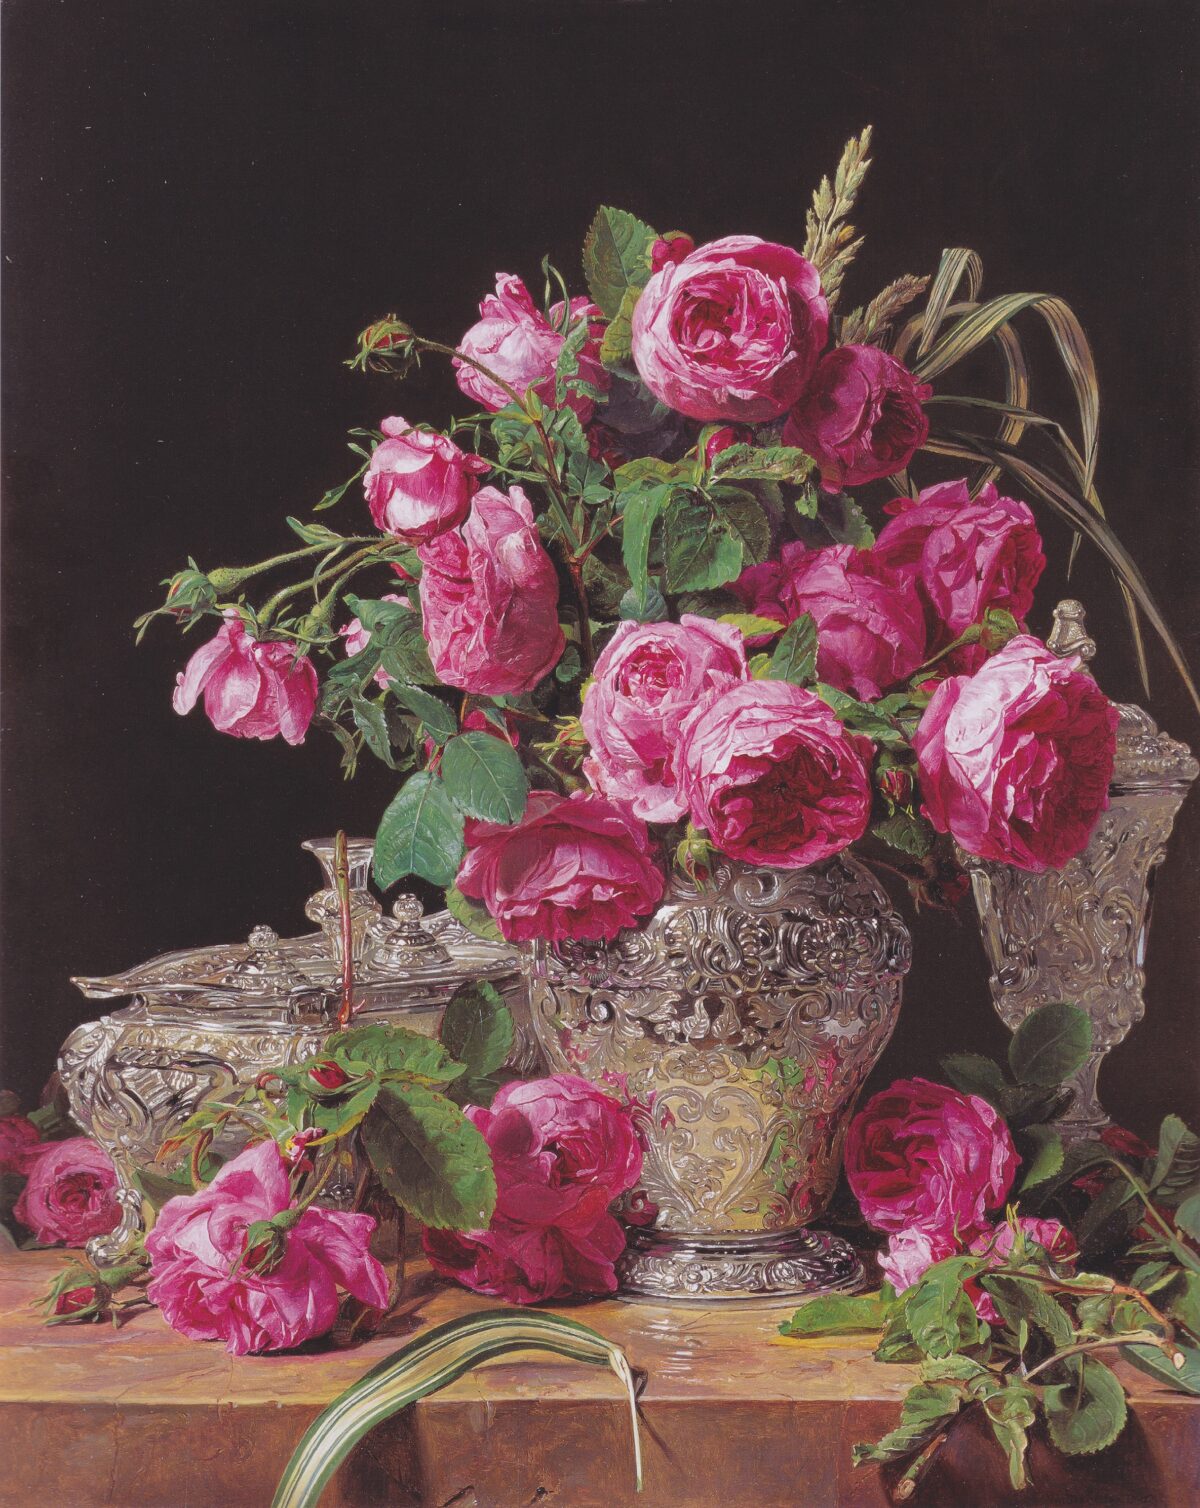 Tác phẩm “Roses” (Những đóa hồng) của họa sĩ Ferdinand Georg Waldmüller, năm 1843. Tranh sơn dầu trên gỗ; kích thước 18 7/8 inch x 15 3/8 inch. Bảo tàng Liechtenstein, Vienna. (Ảnh: Tài sản công)